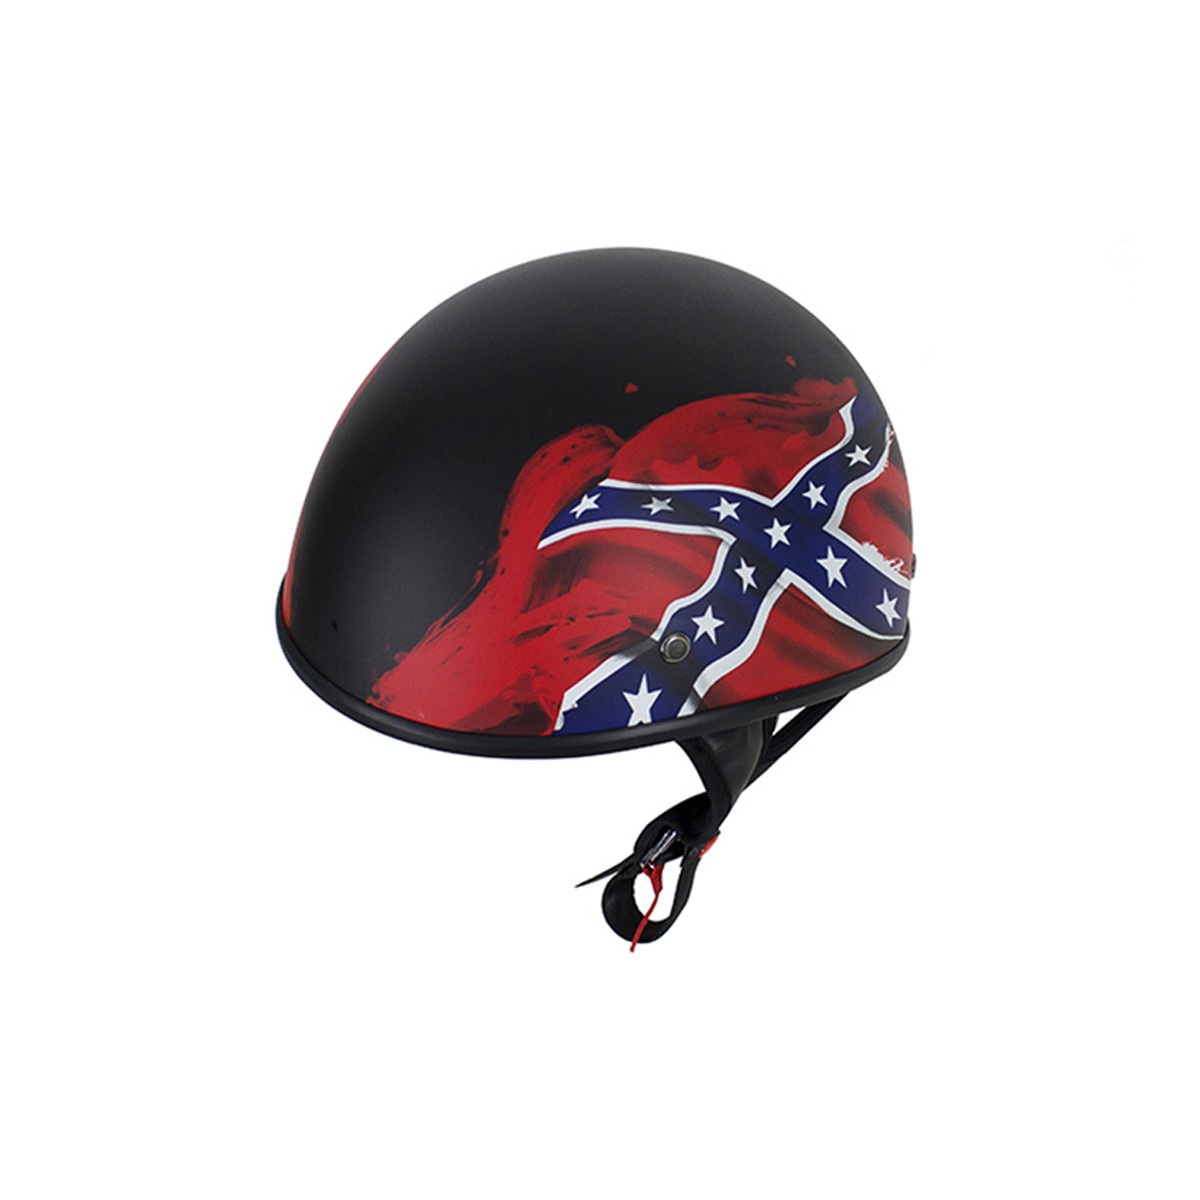 Flat Black DOT Rebel Motorcycle Helmet